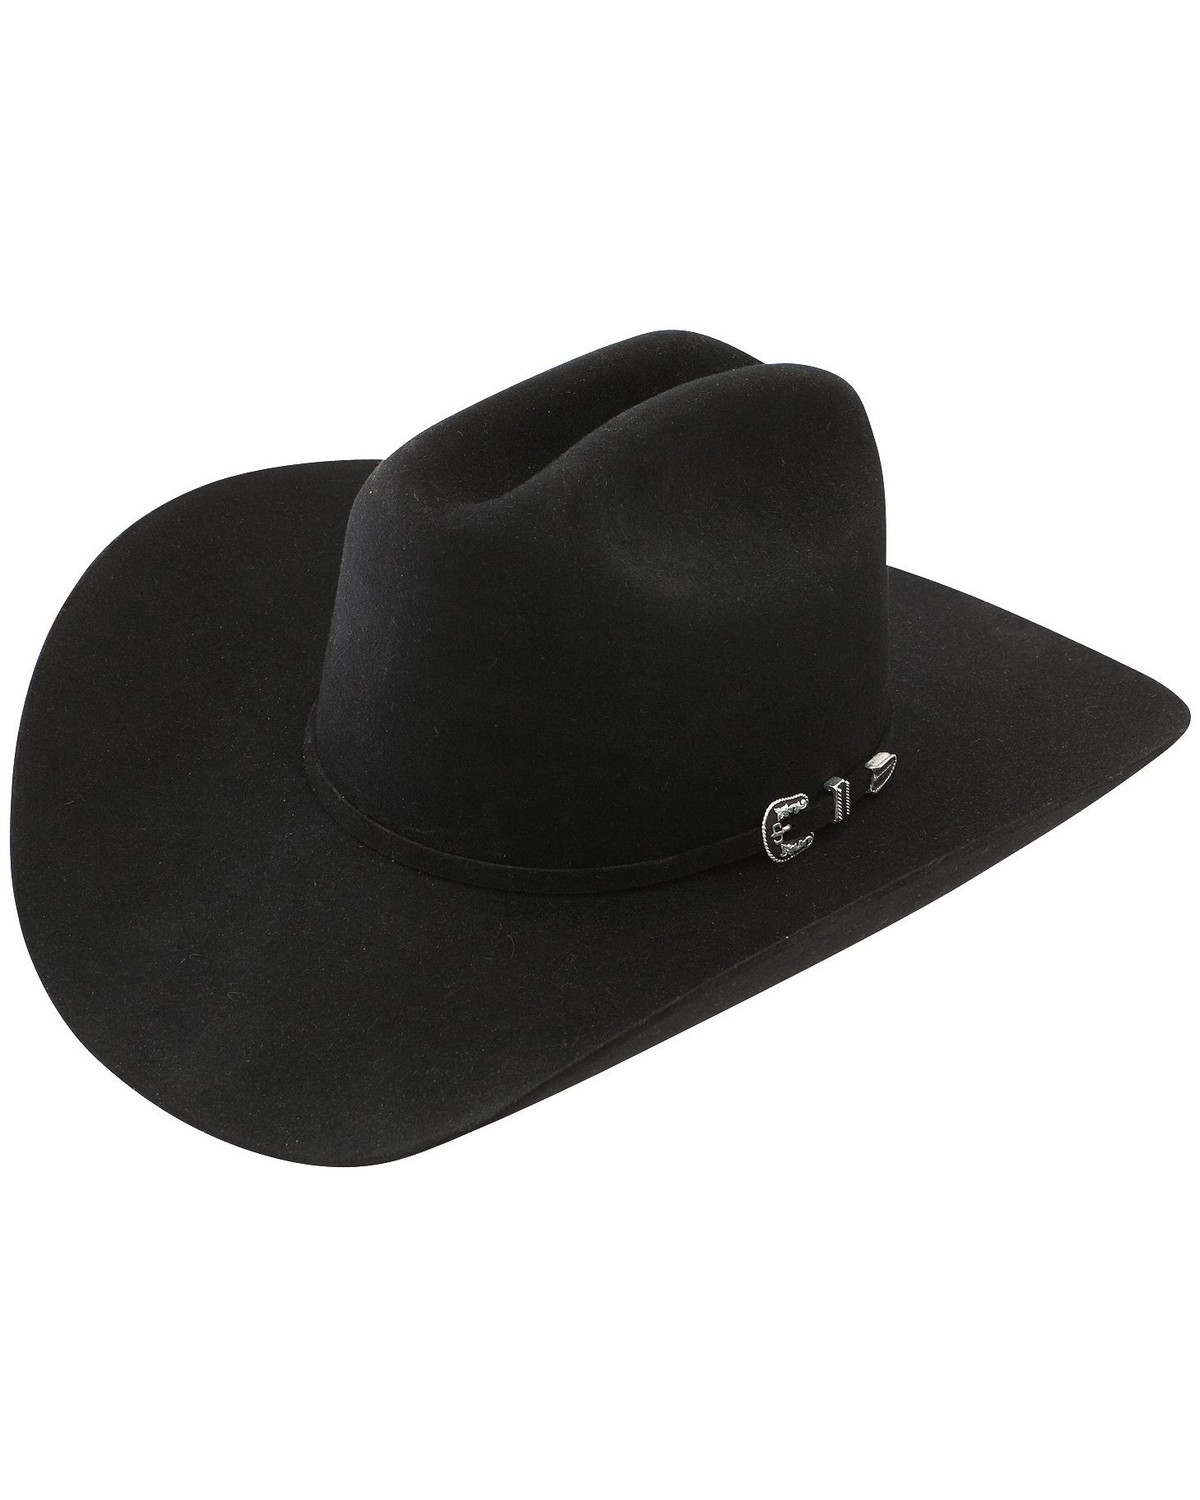 Fur Felt Cowboy Hats